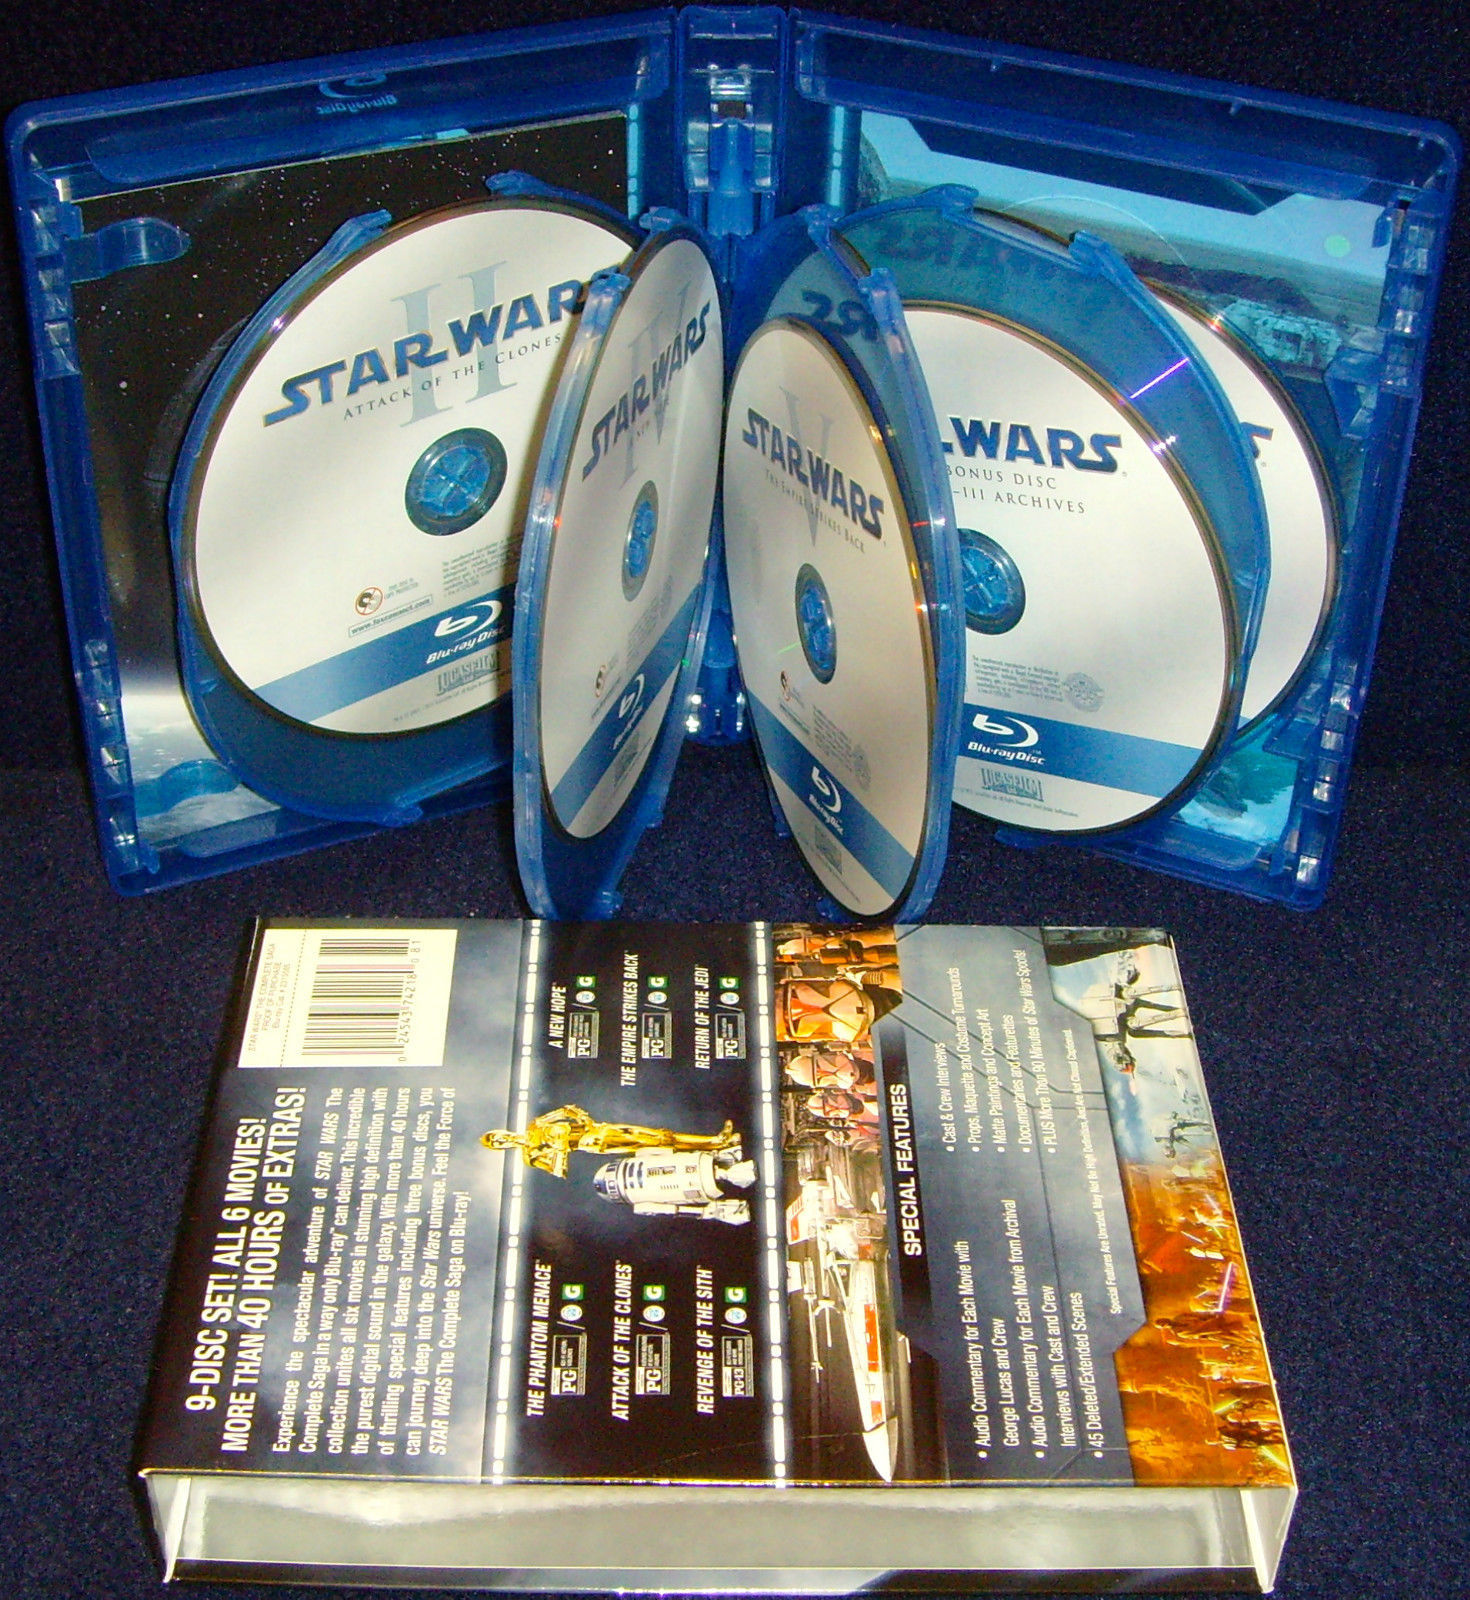 star wars saga blu ray